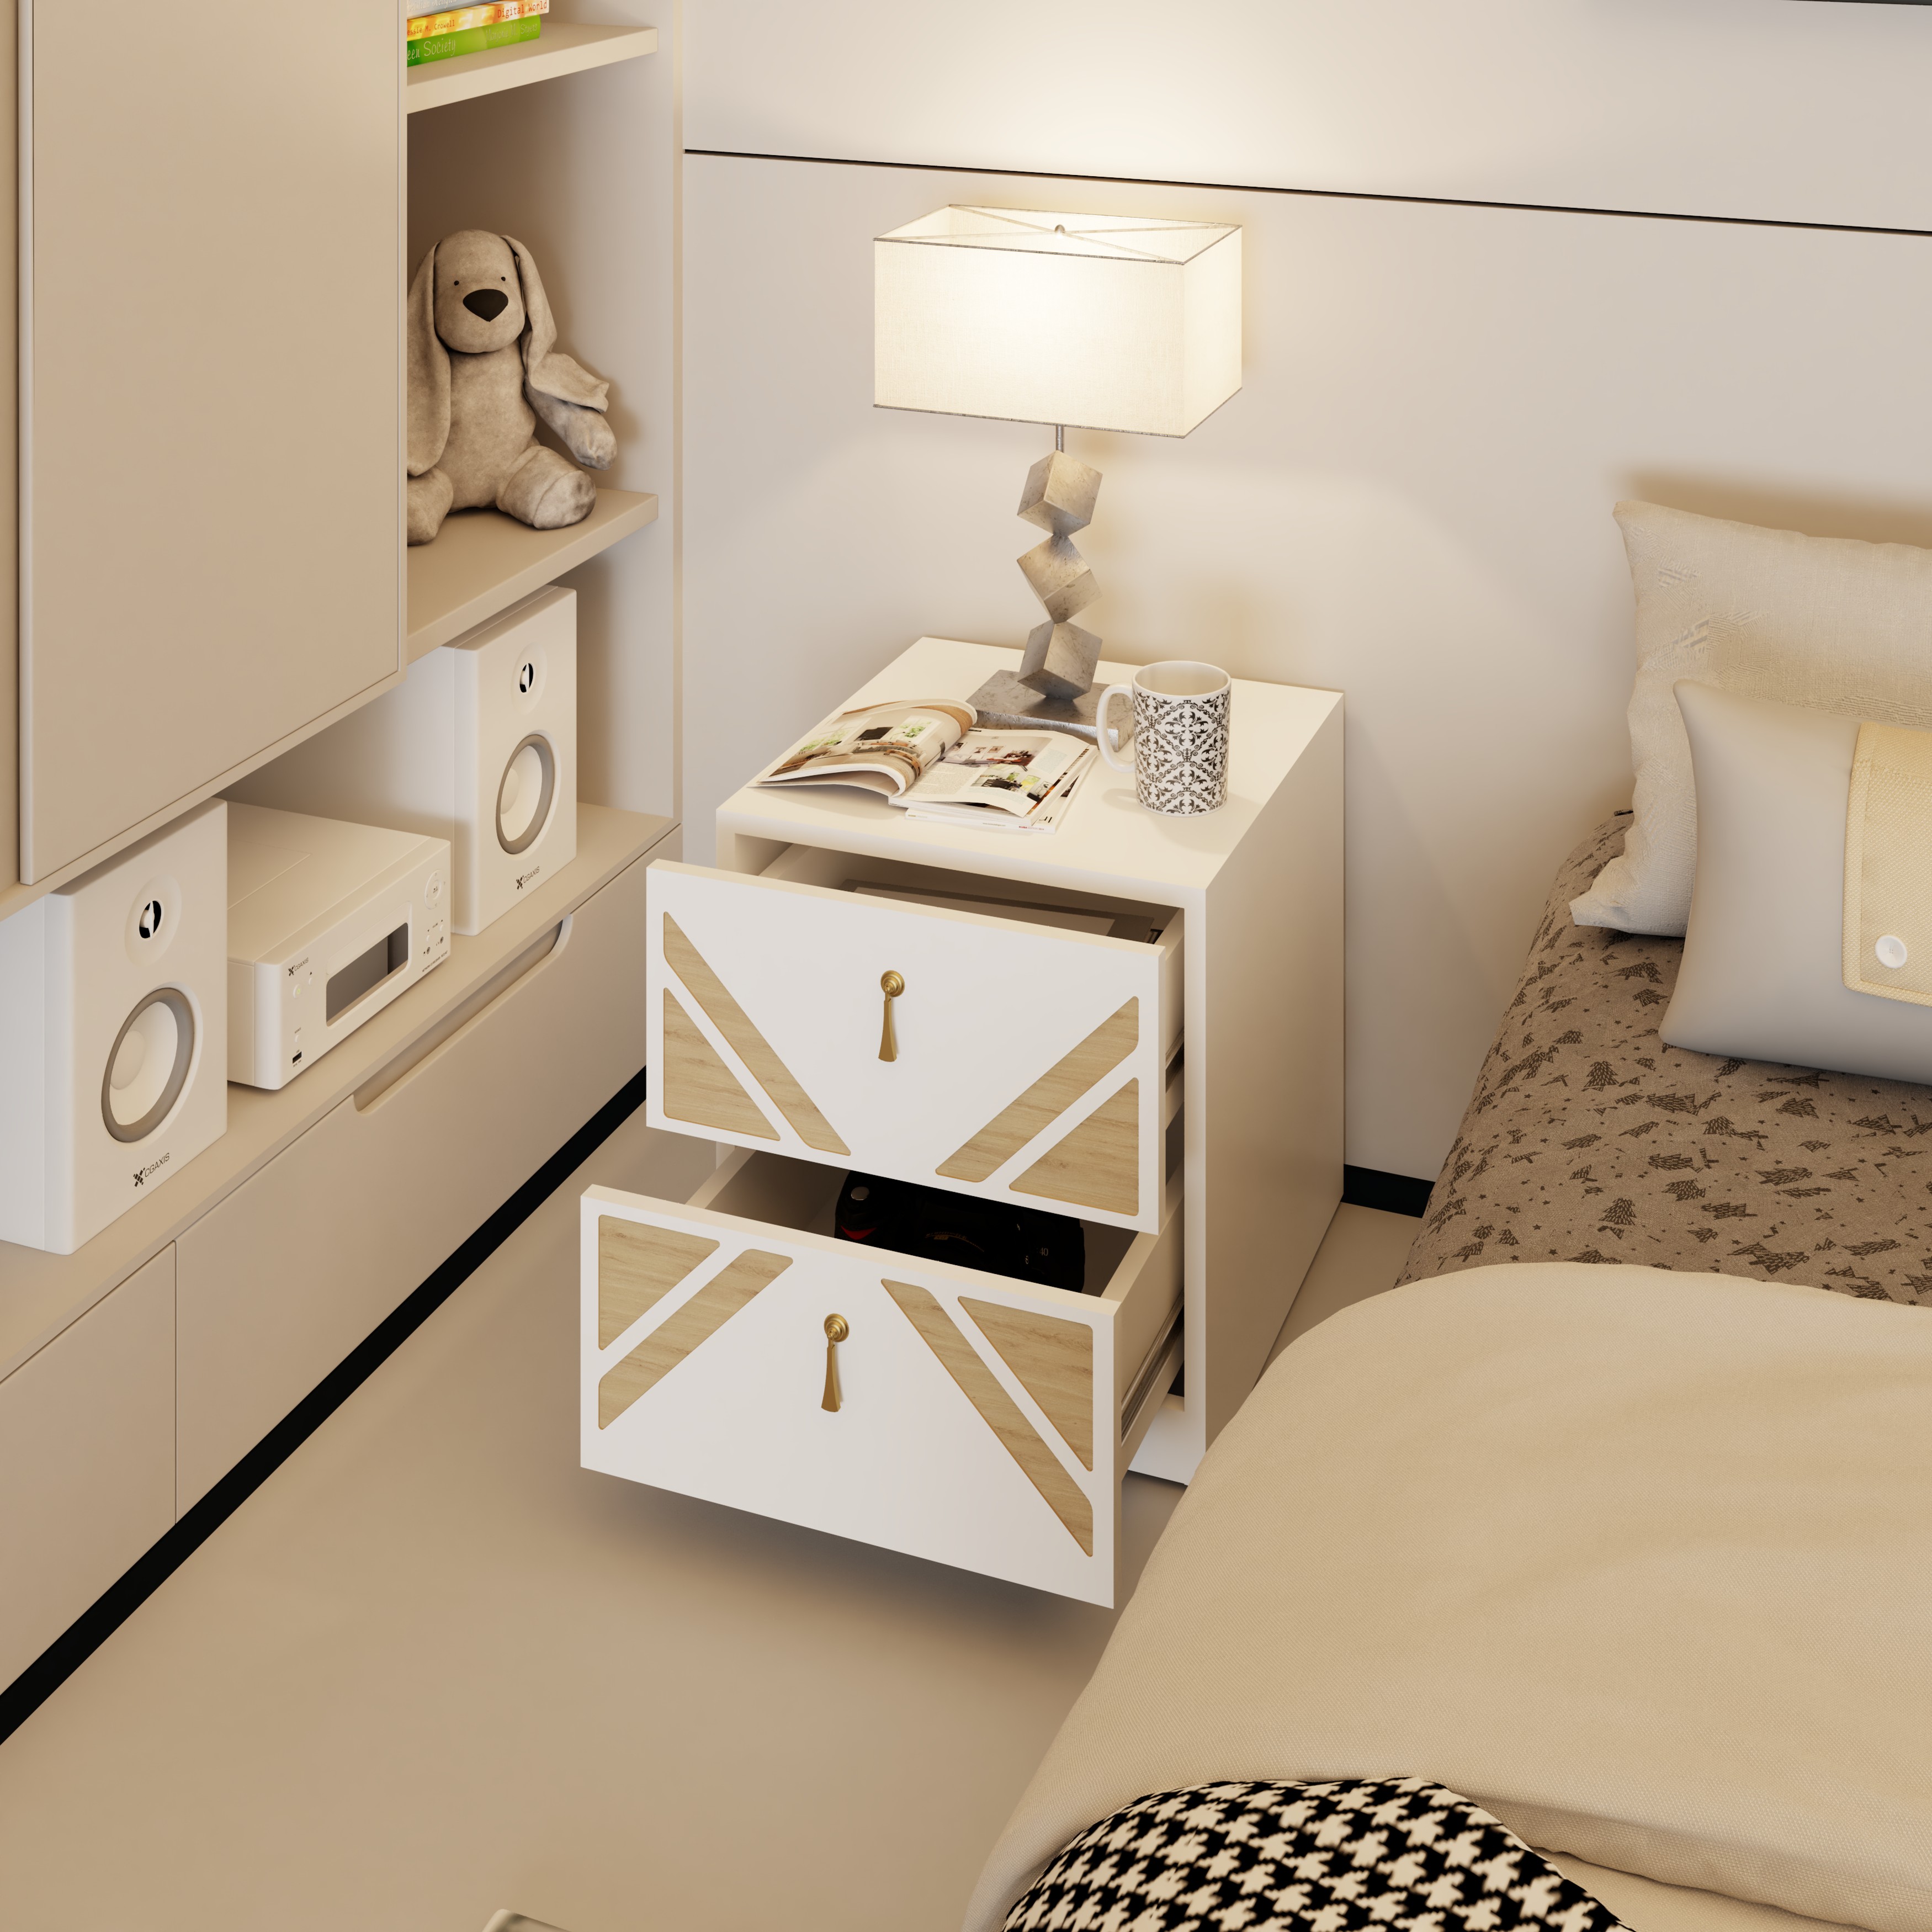 [Happy Home Furniture] CHARIS, Táp đầu giường 2 ngăn kéo, 42cm x 45cm x 46cm ( DxRxC), THK_116